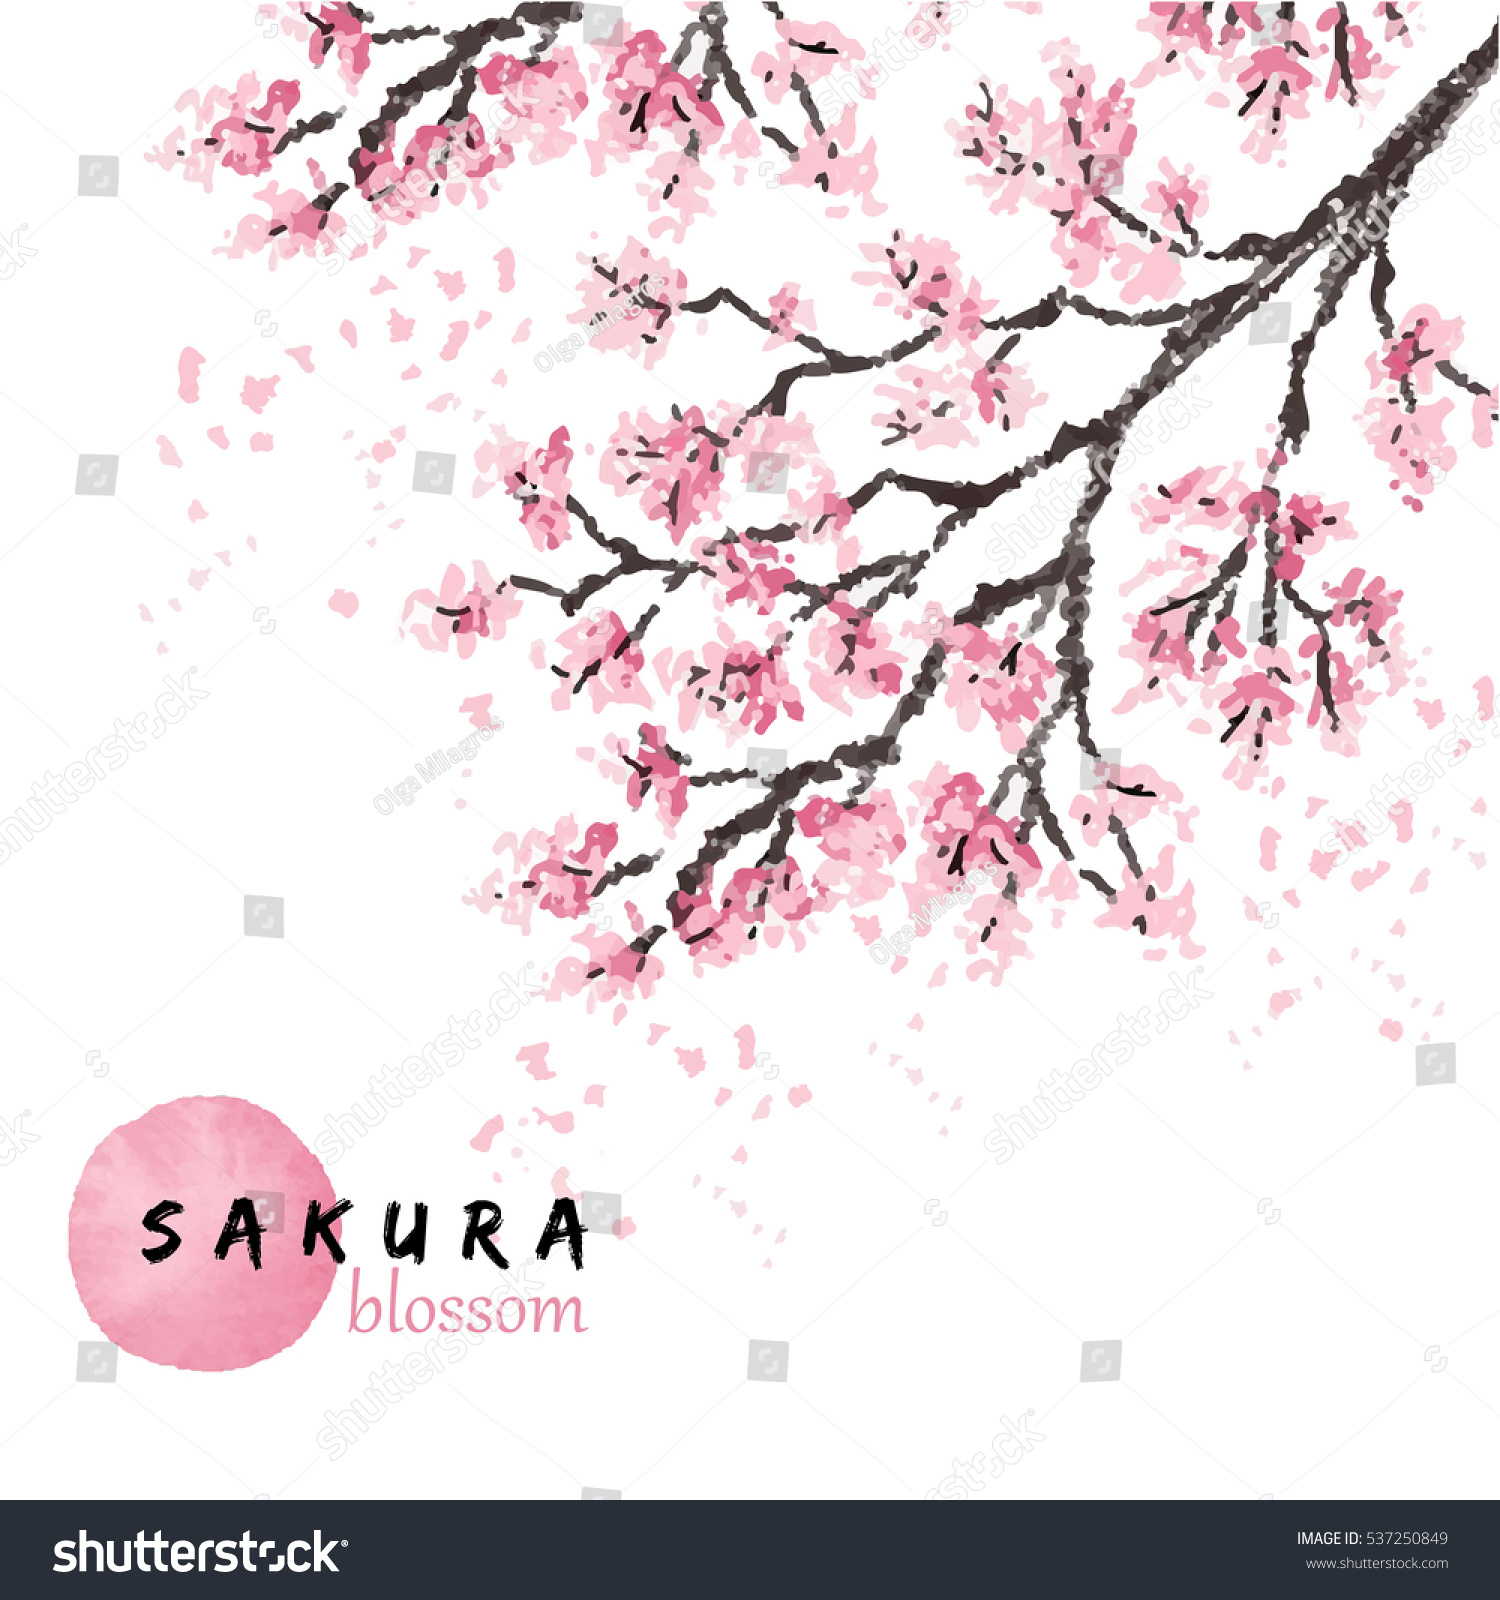 桜の枝に花が咲く桜のベクターイラスト 手描きのスタイル のベクター画像素材 ロイヤリティフリー